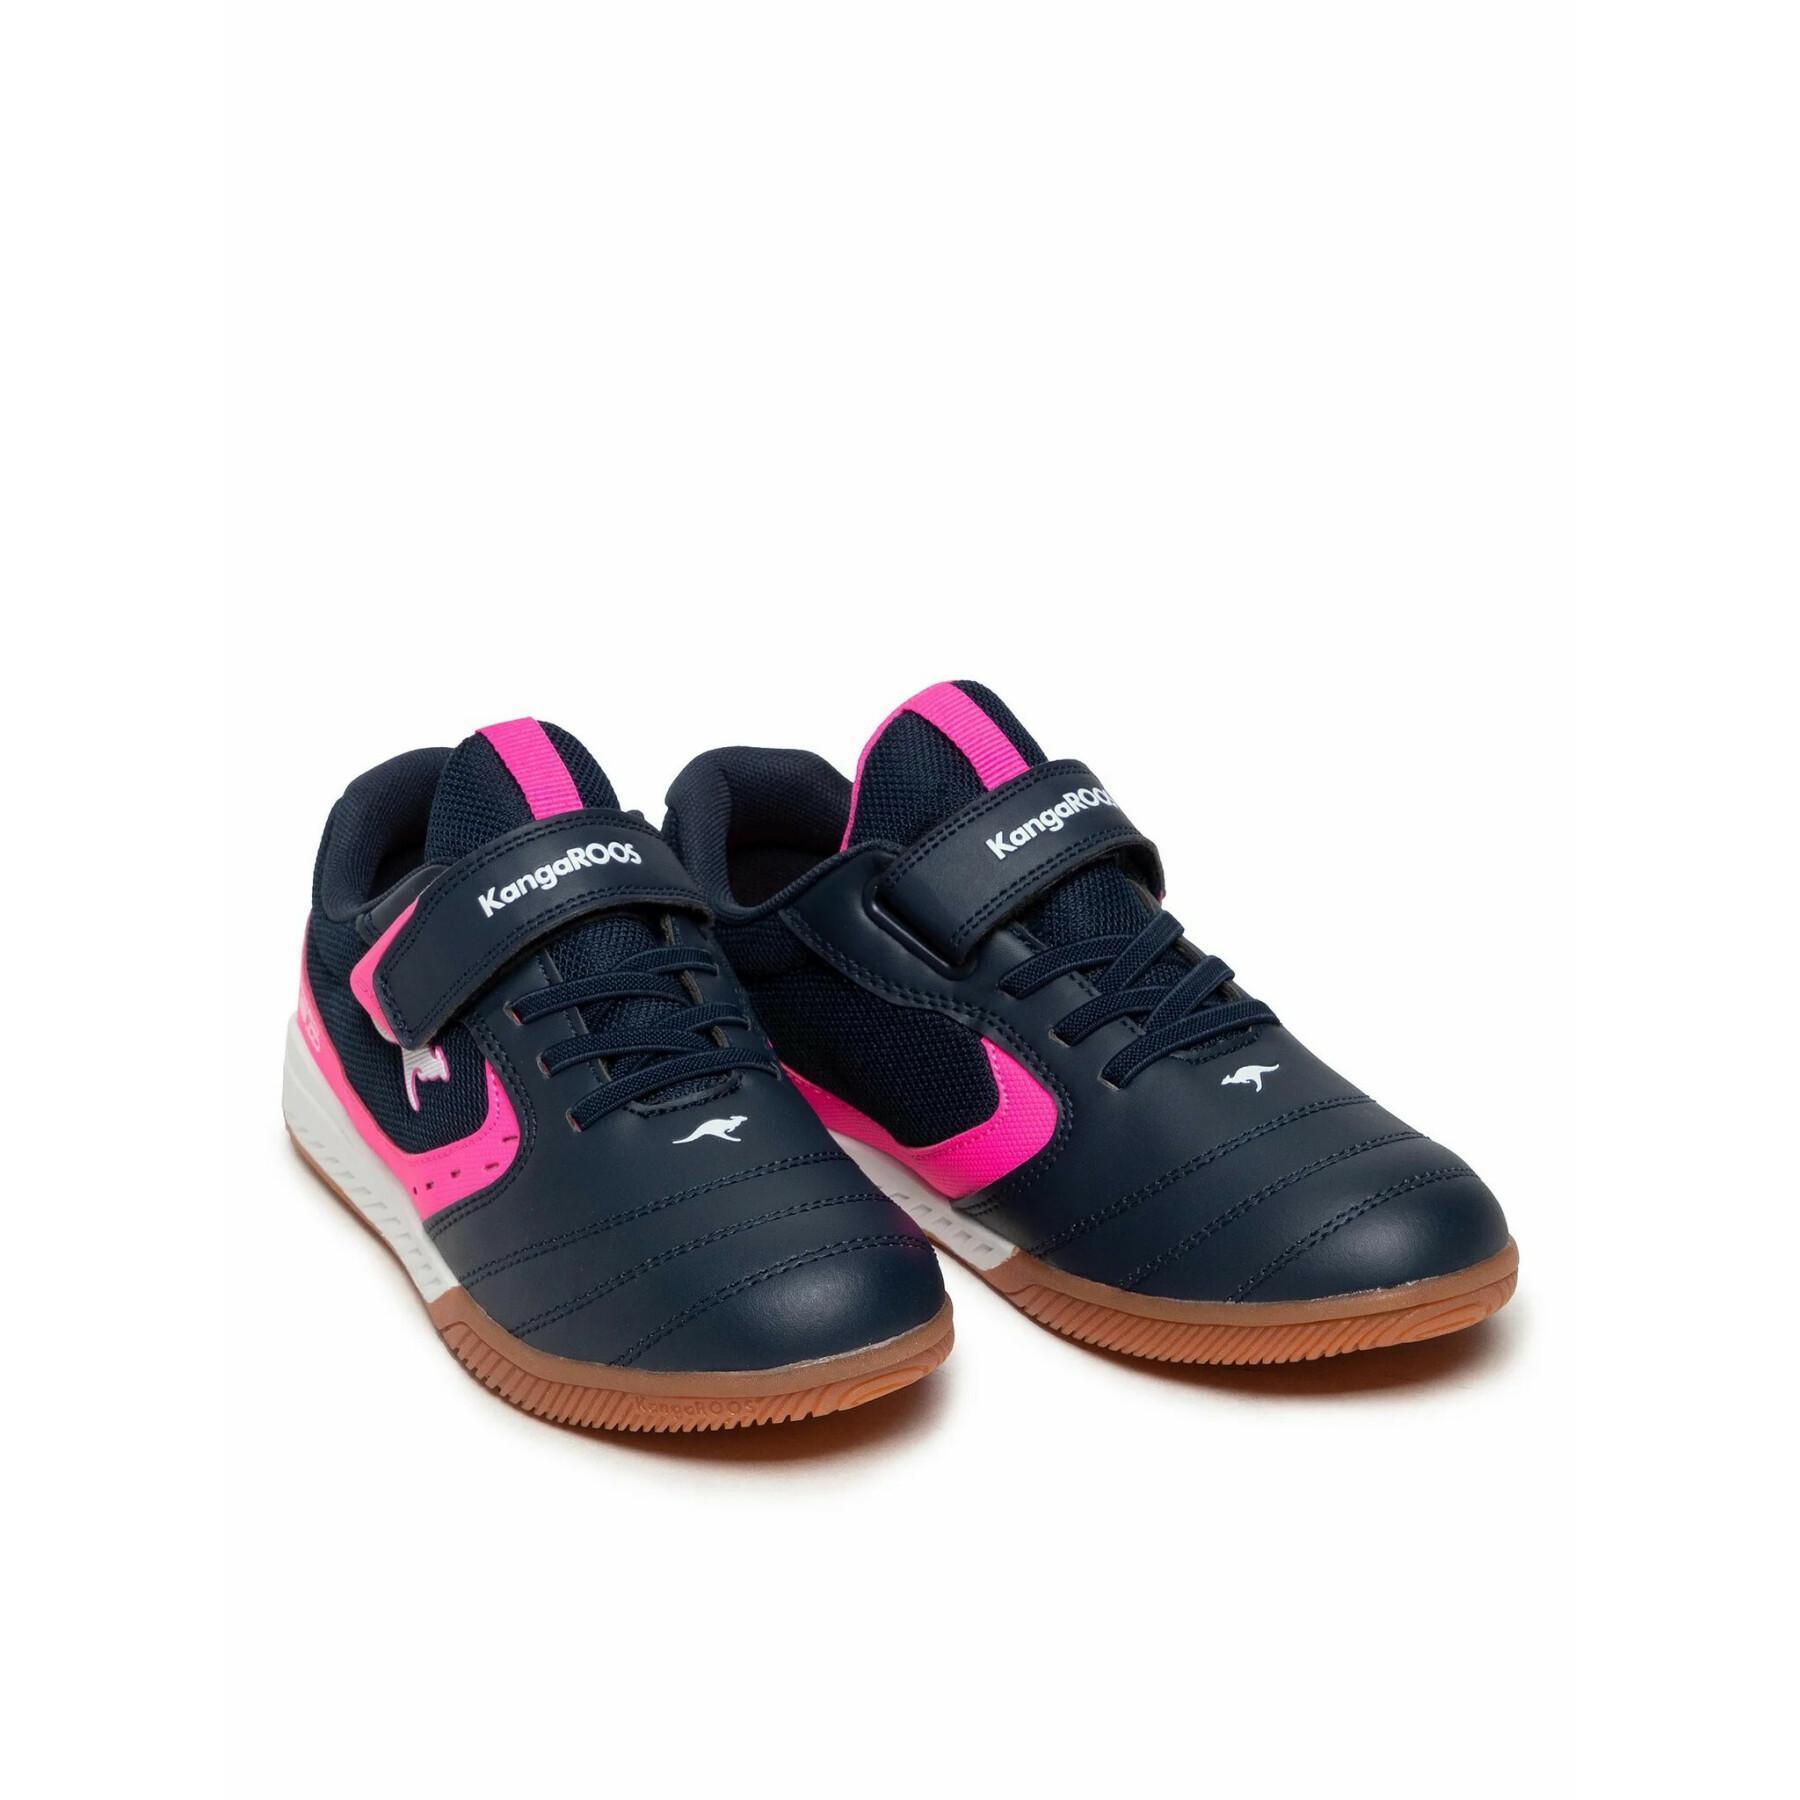 Children's sneakers KangaROOS K5-Court EV junior